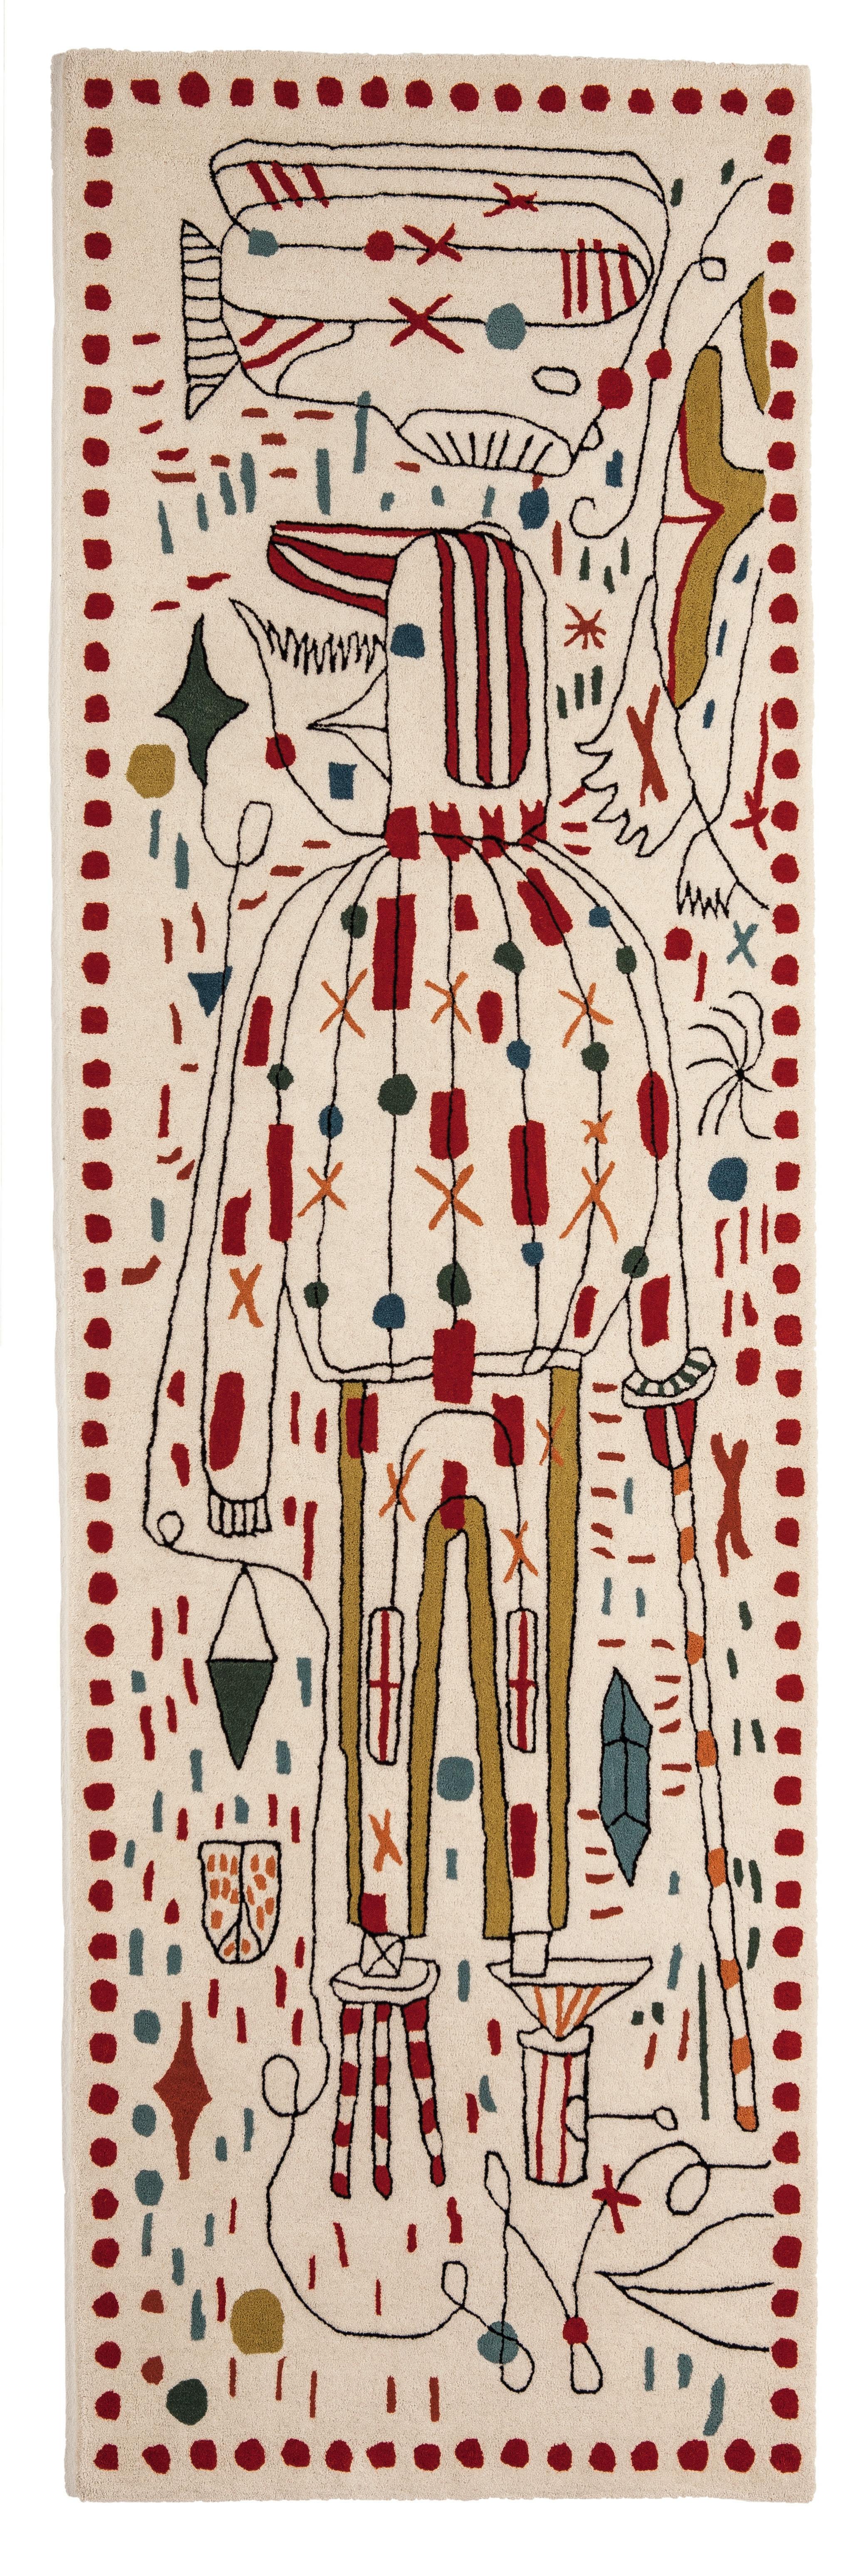 'Hayon x Nani' Hand-Tufted Rug by Jaime Hayon for Nanimarquina For Sale 2